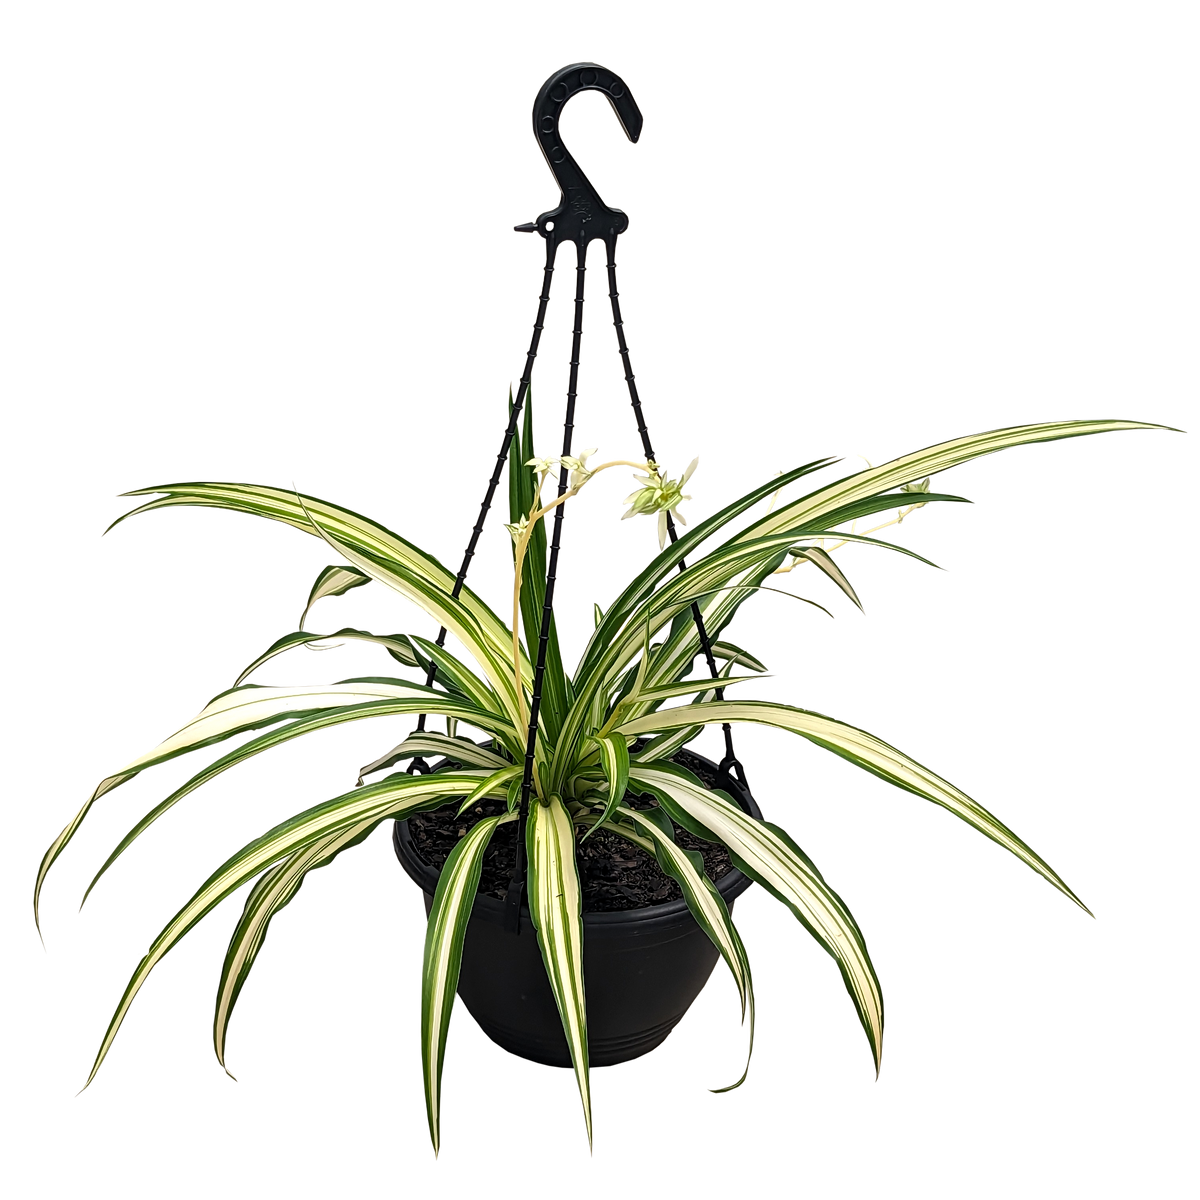 Chlorophytum comosum Vittatum - Spider Plant 200mm